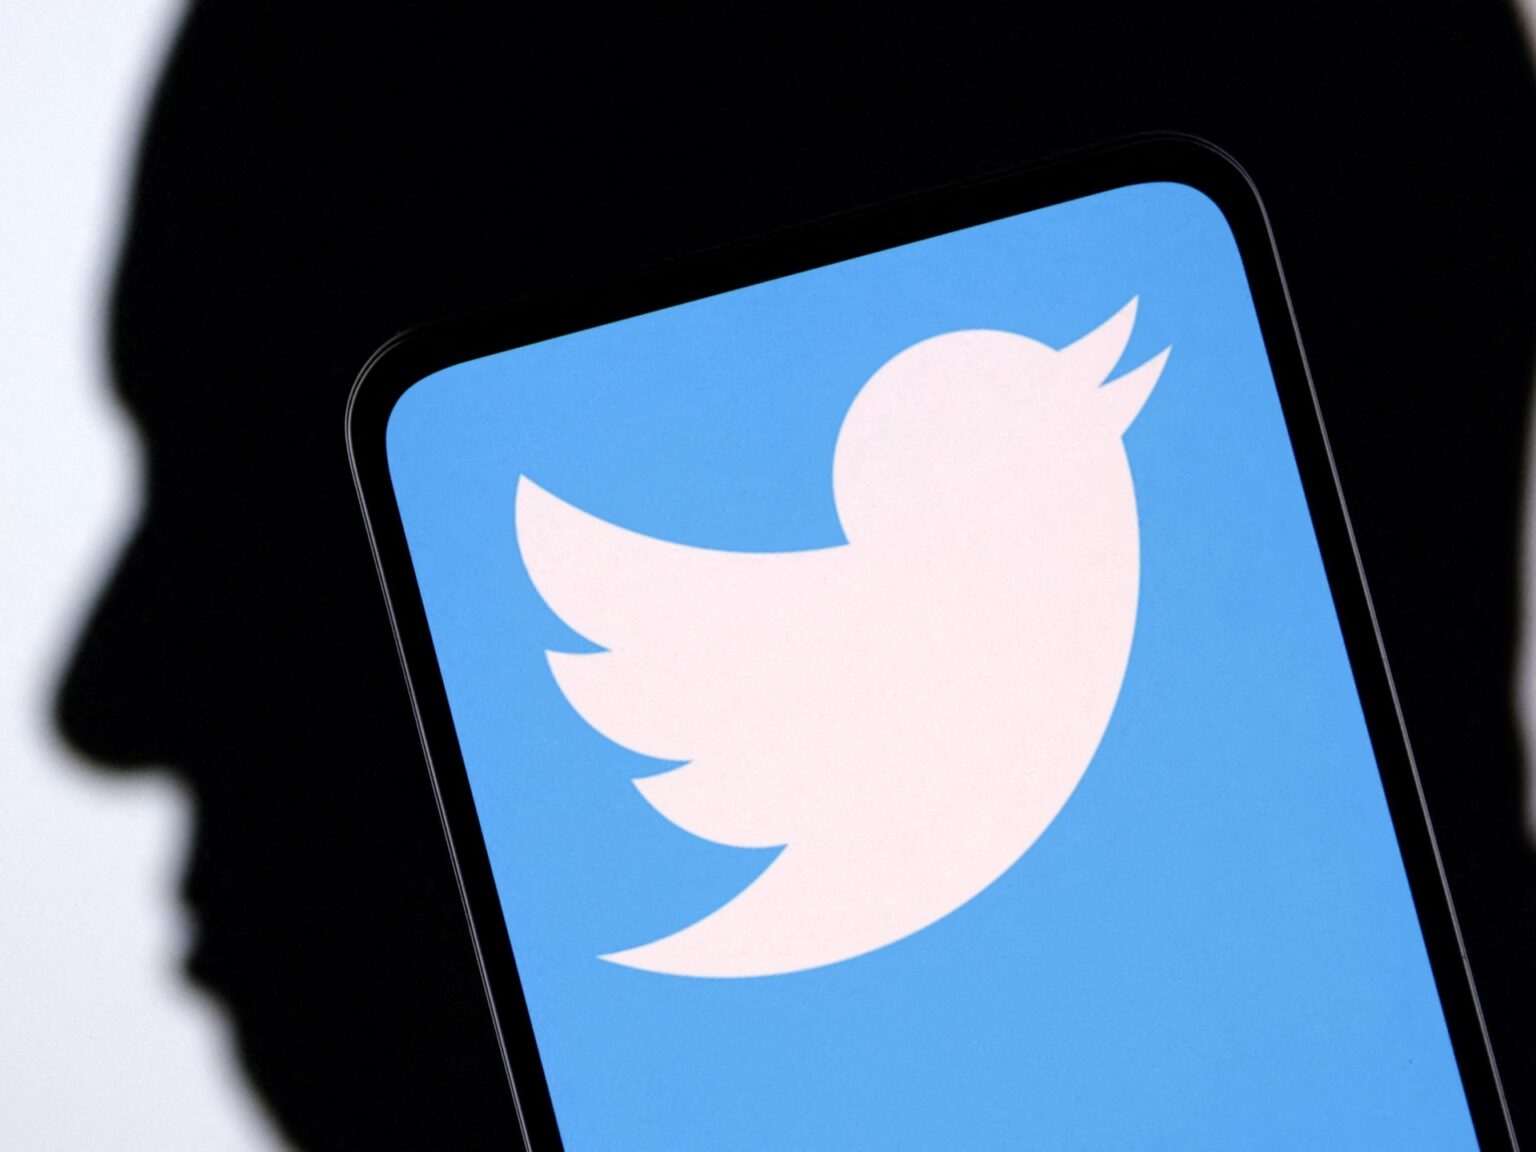 New Zealand radio threatens to shut down Twitter